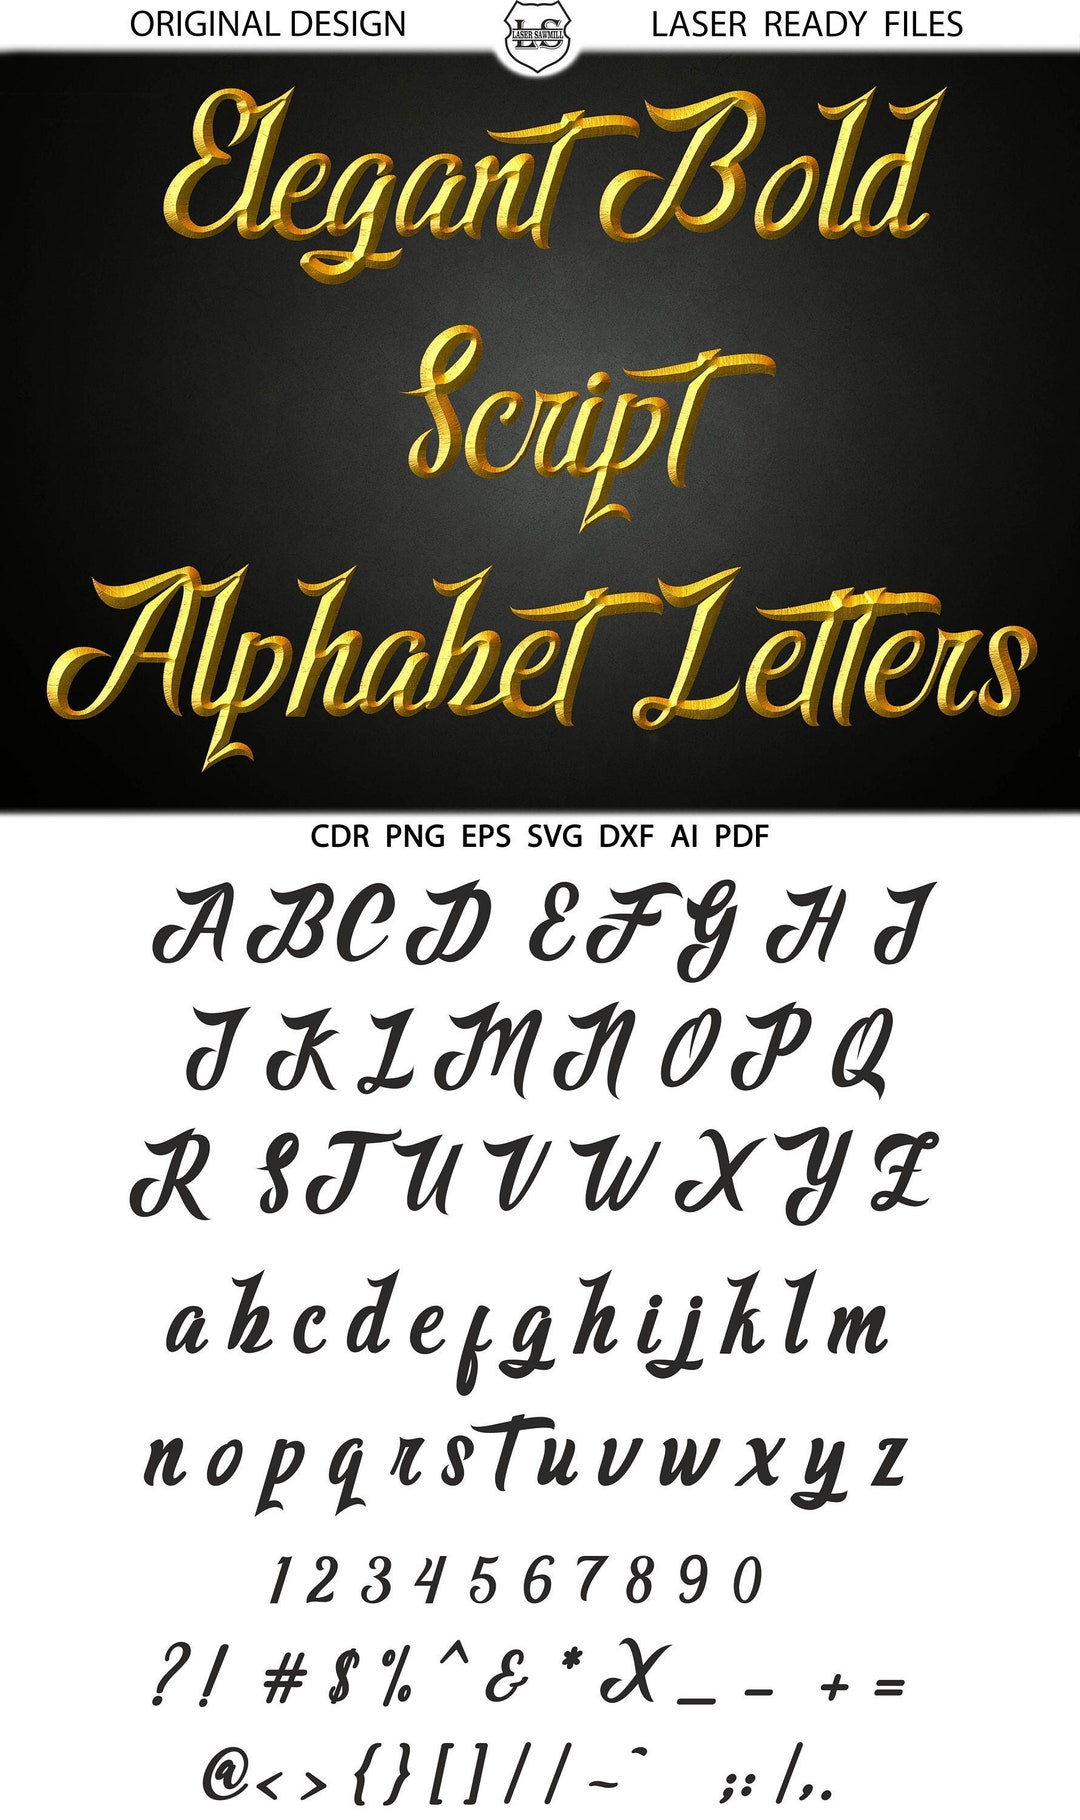 Elegant Bold Script Alphabet Letters SVG DXF Vector Images - Etsy